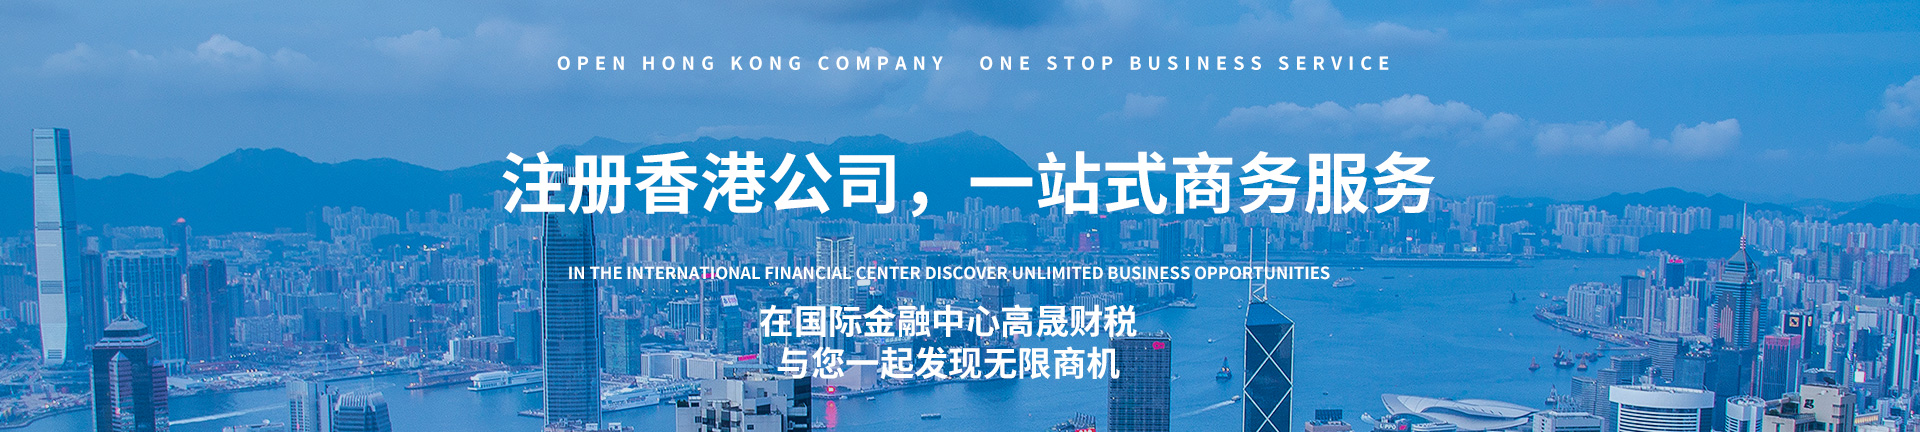 注册香港公司,一站式商务服务